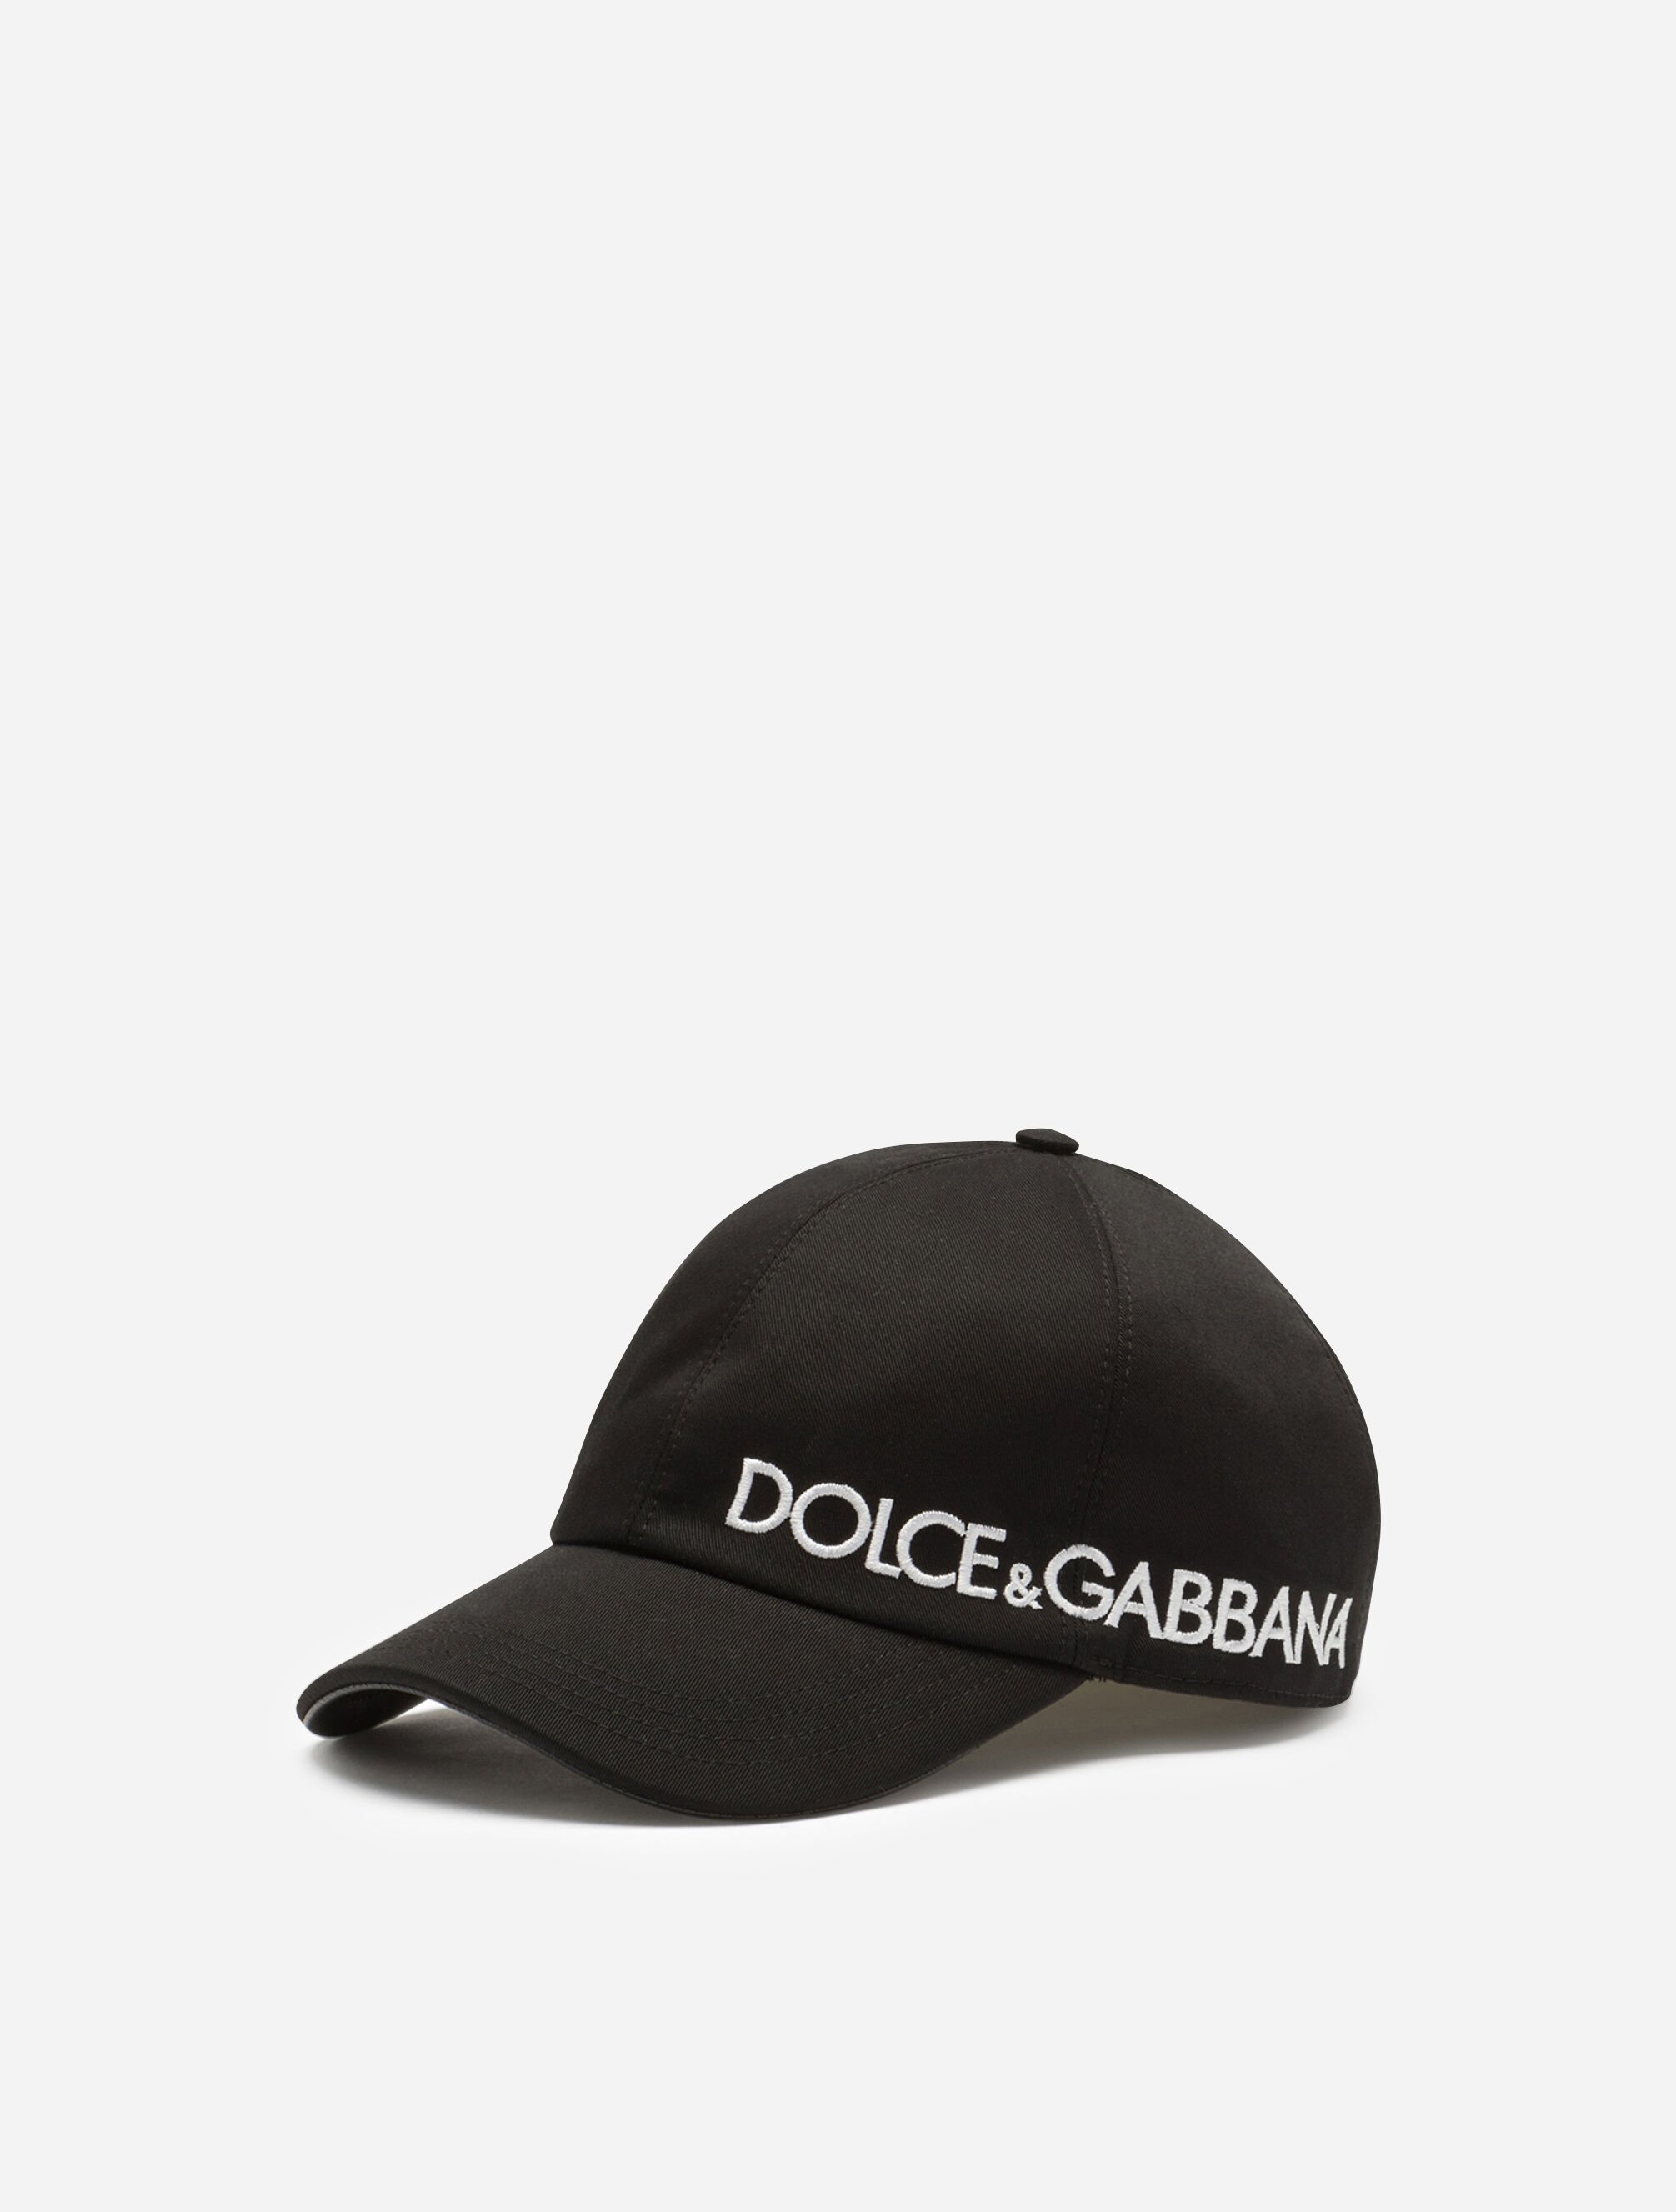 Dolce & Gabbana キャップ